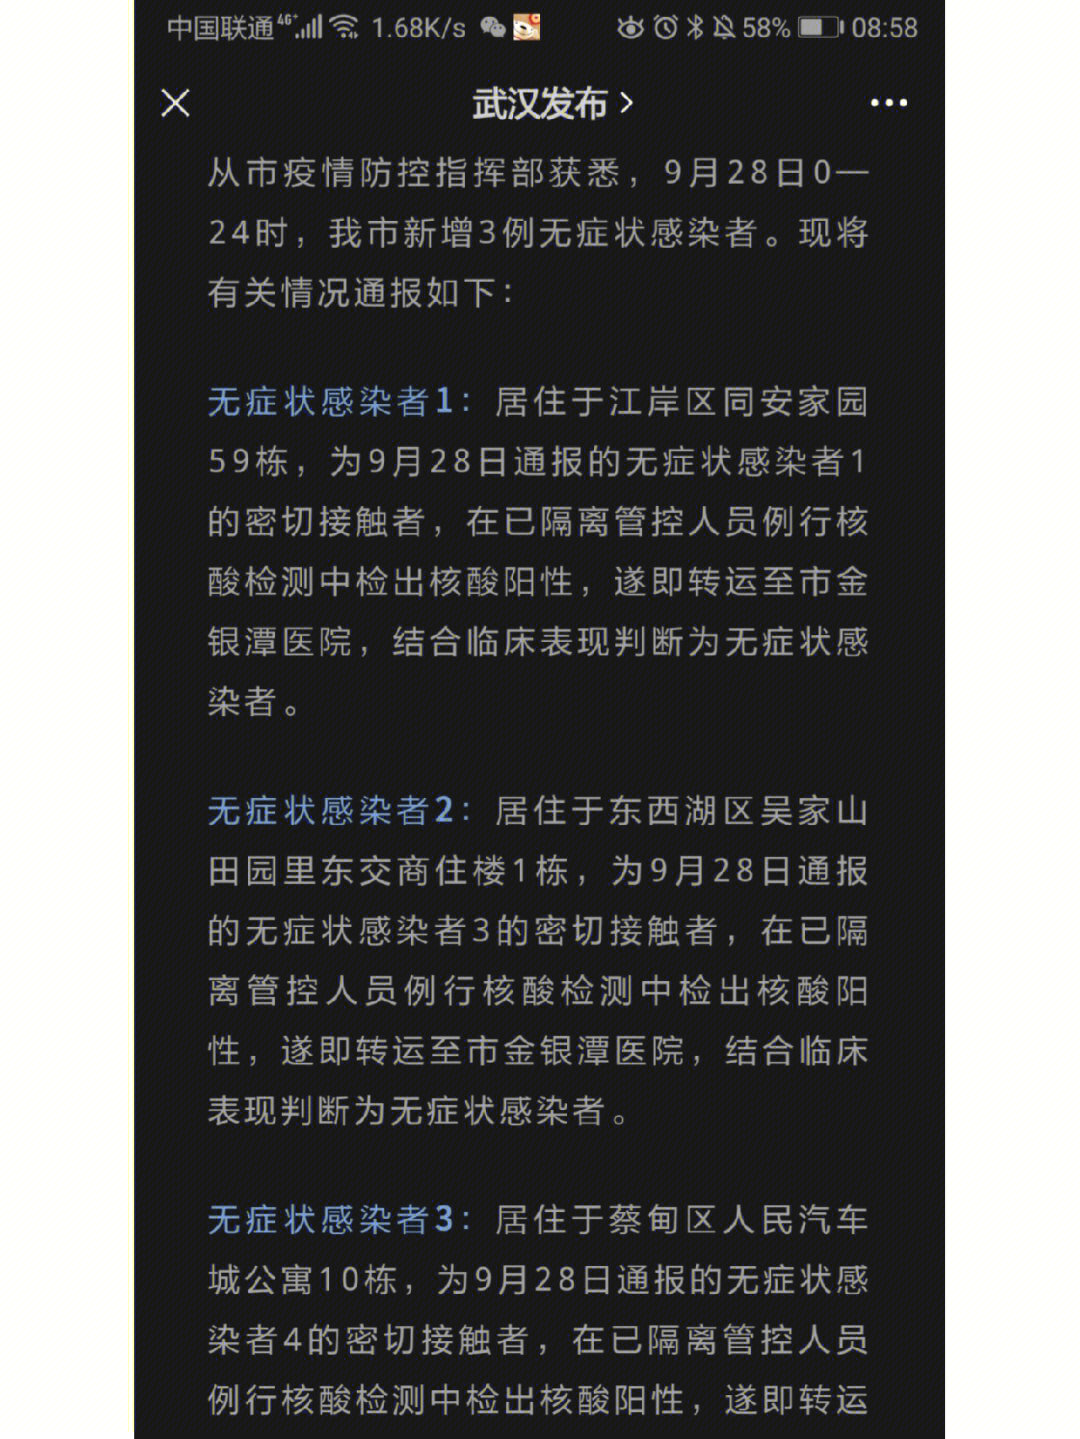 武汉新增3例无症状感染者的情况通报